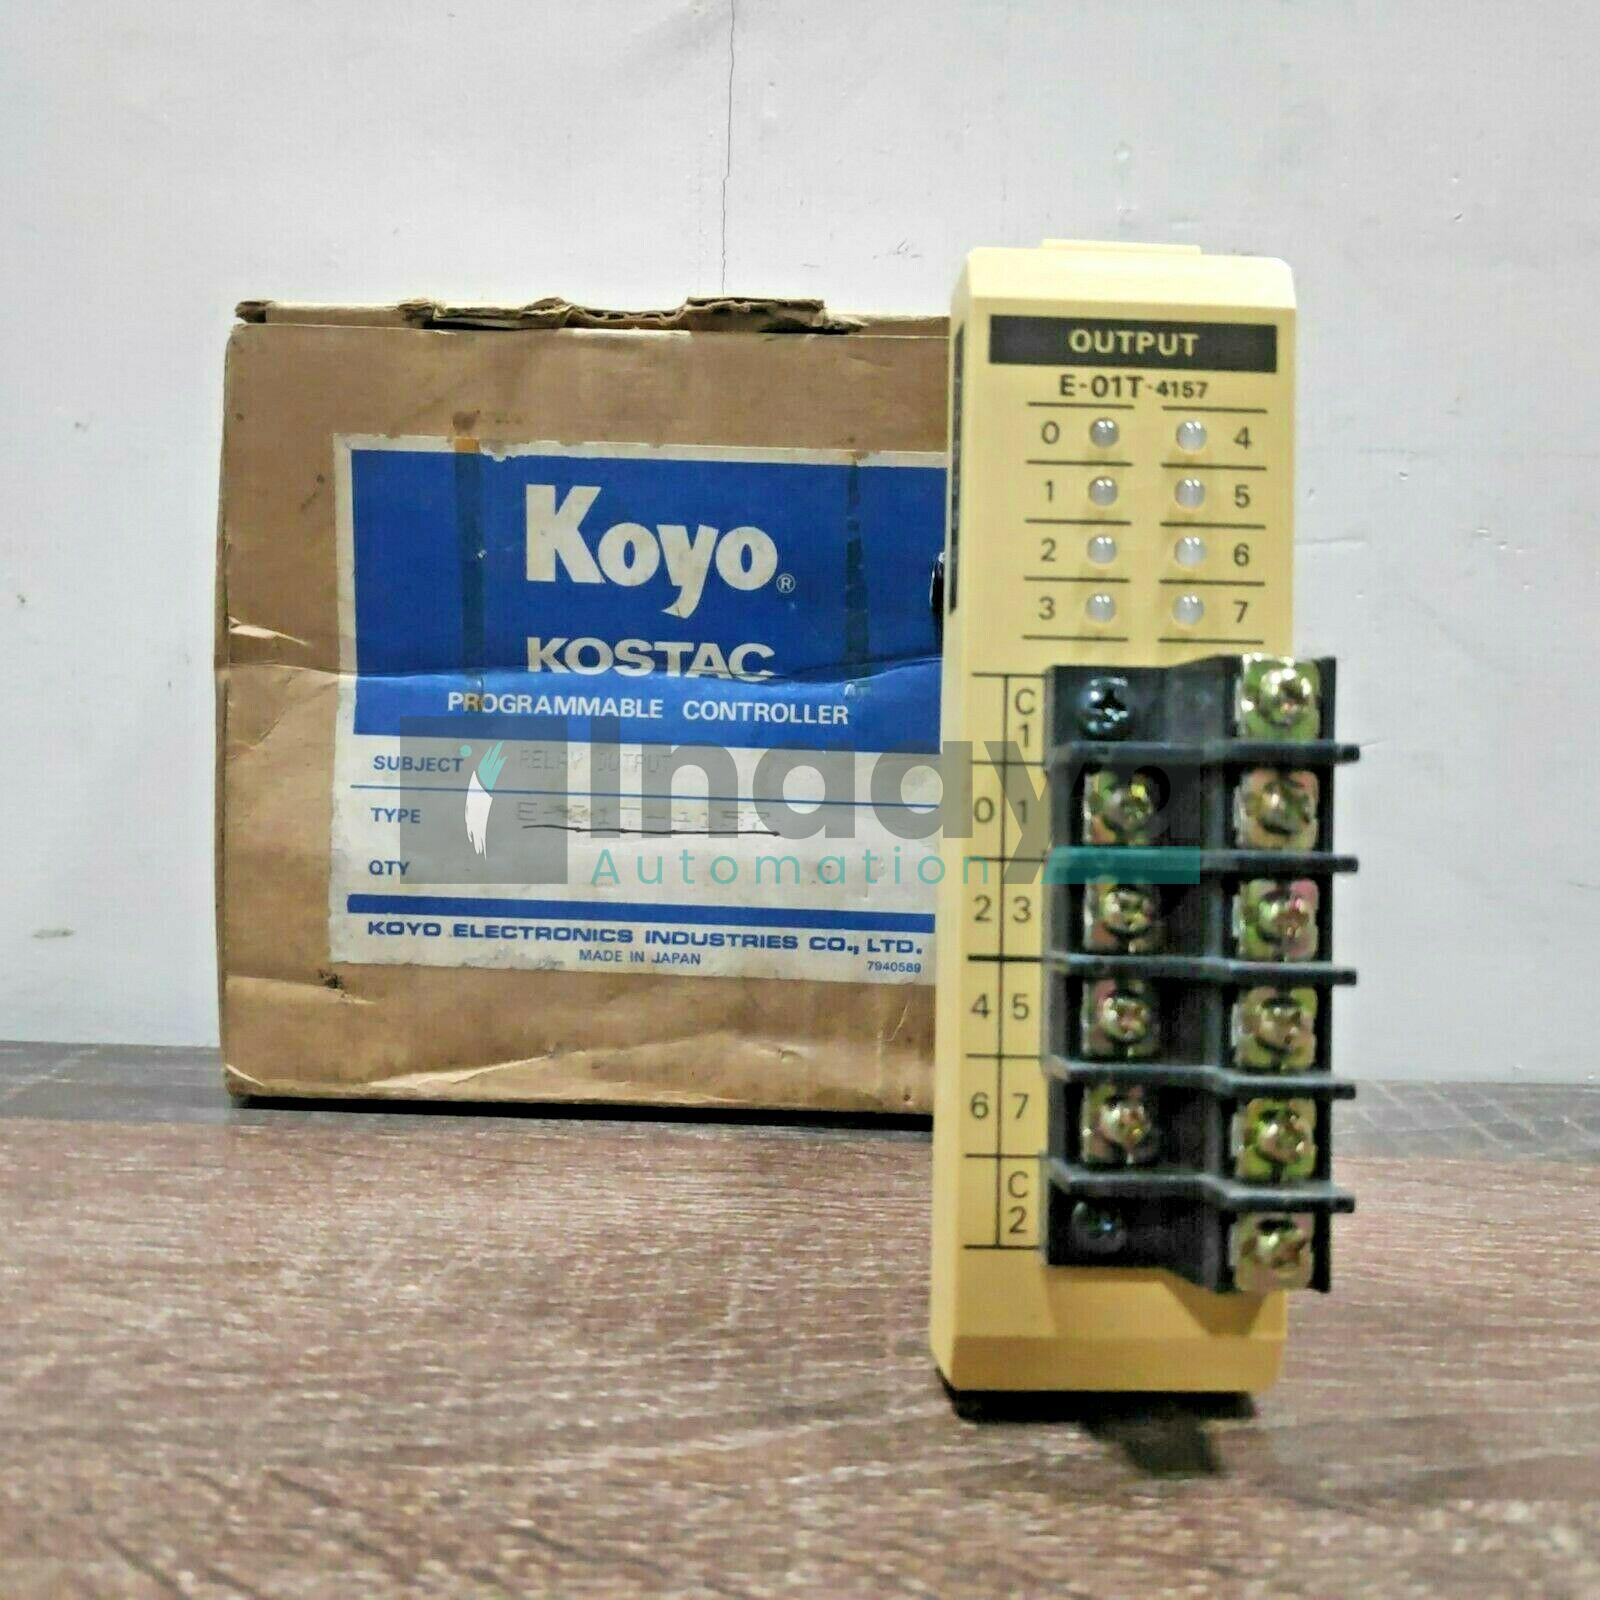 KOYO E-01T-4157 RELAY OUTPUT PROGRAMMABLE CONTROLLER